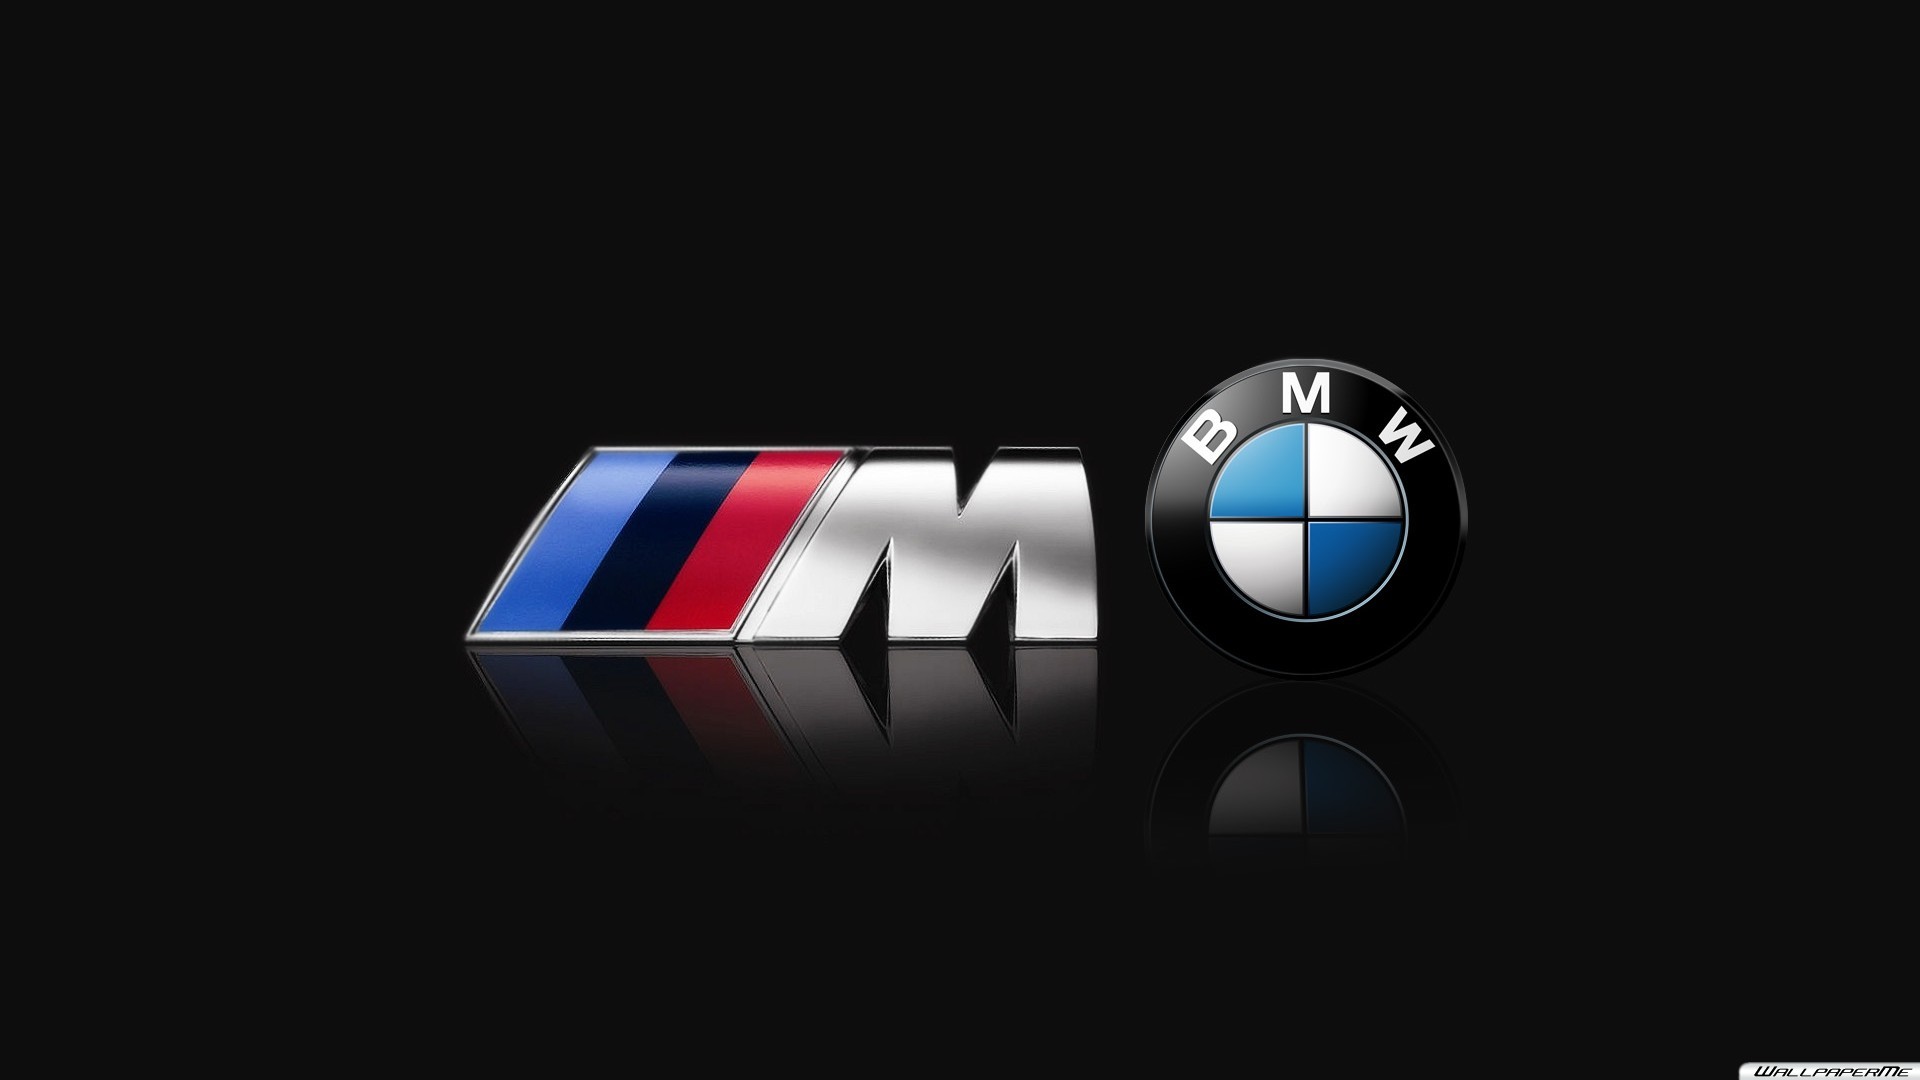 Bmw m power. БМВ м5 значок. BMW m3 значок. BMW M эмблема. BMW логотип в высоком качестве.